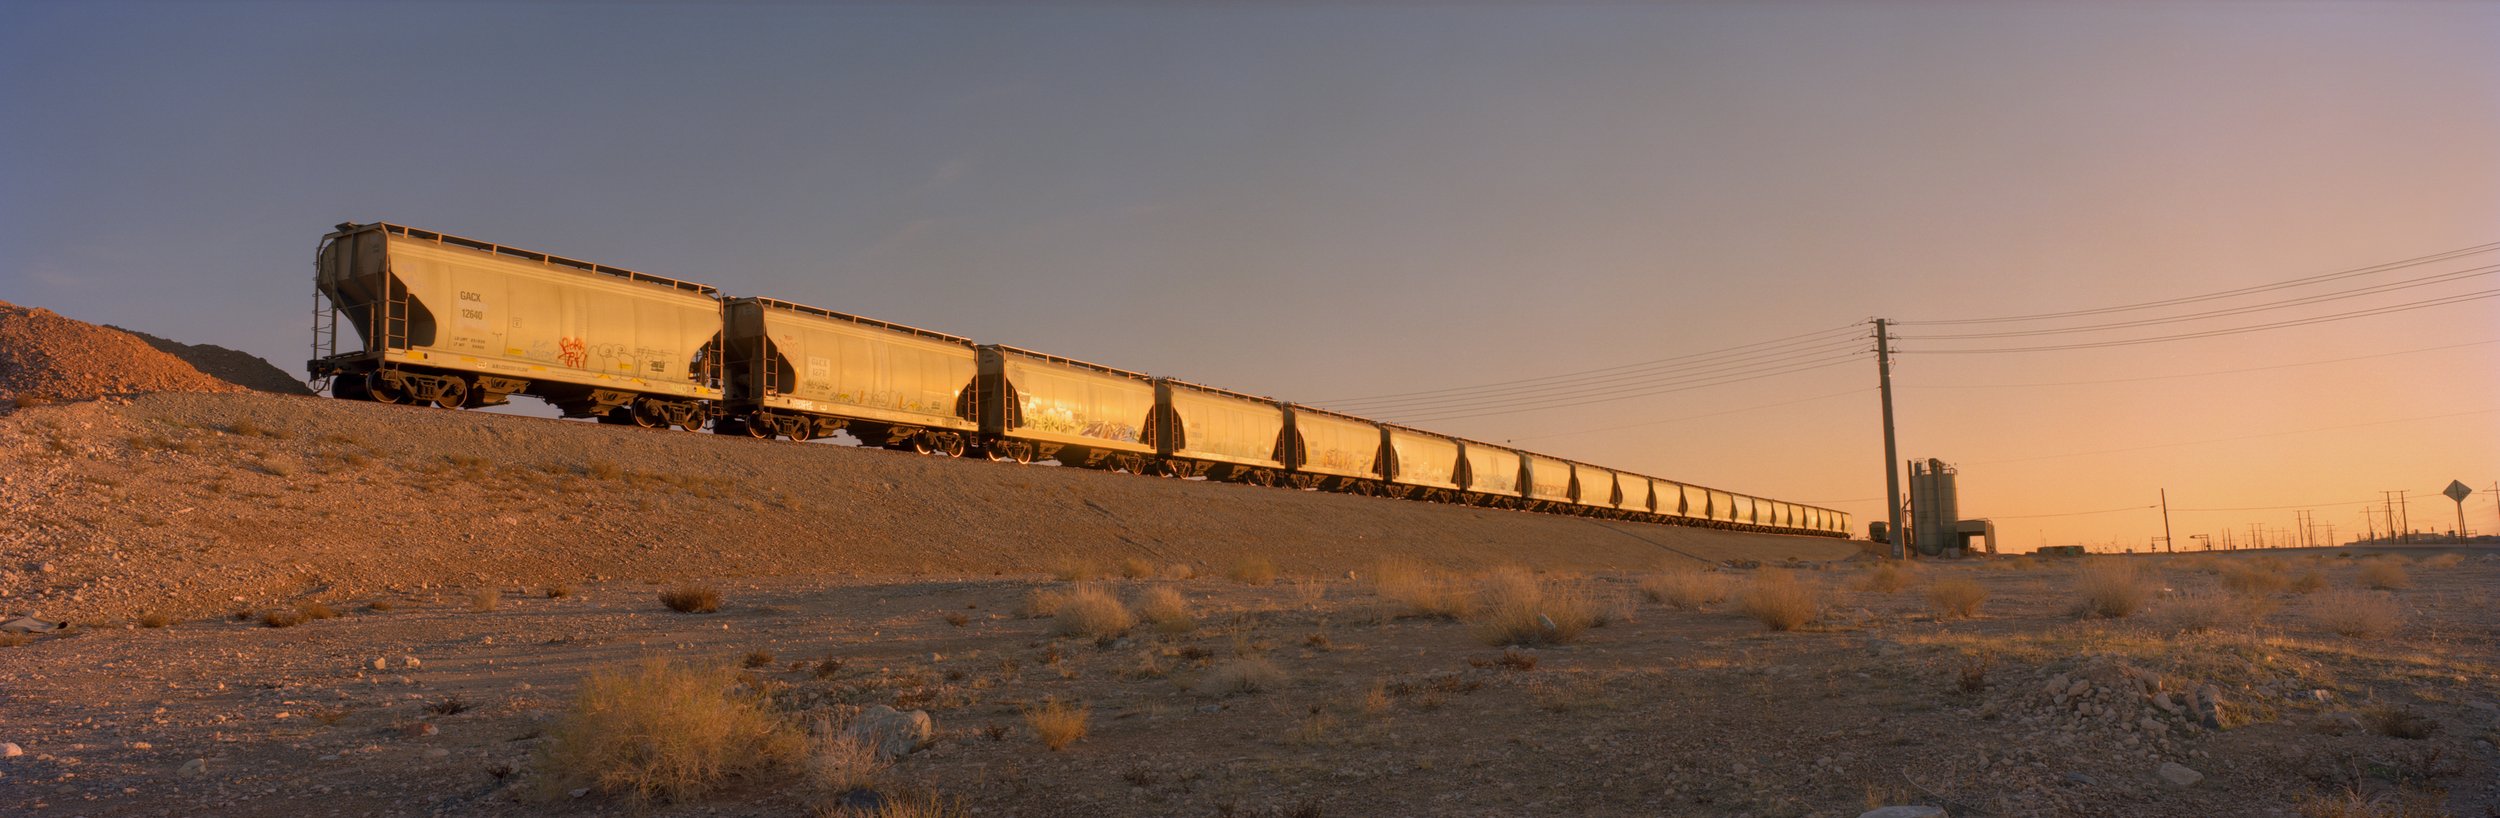   Side Rail. North Las Vegas. February 16, 2010  